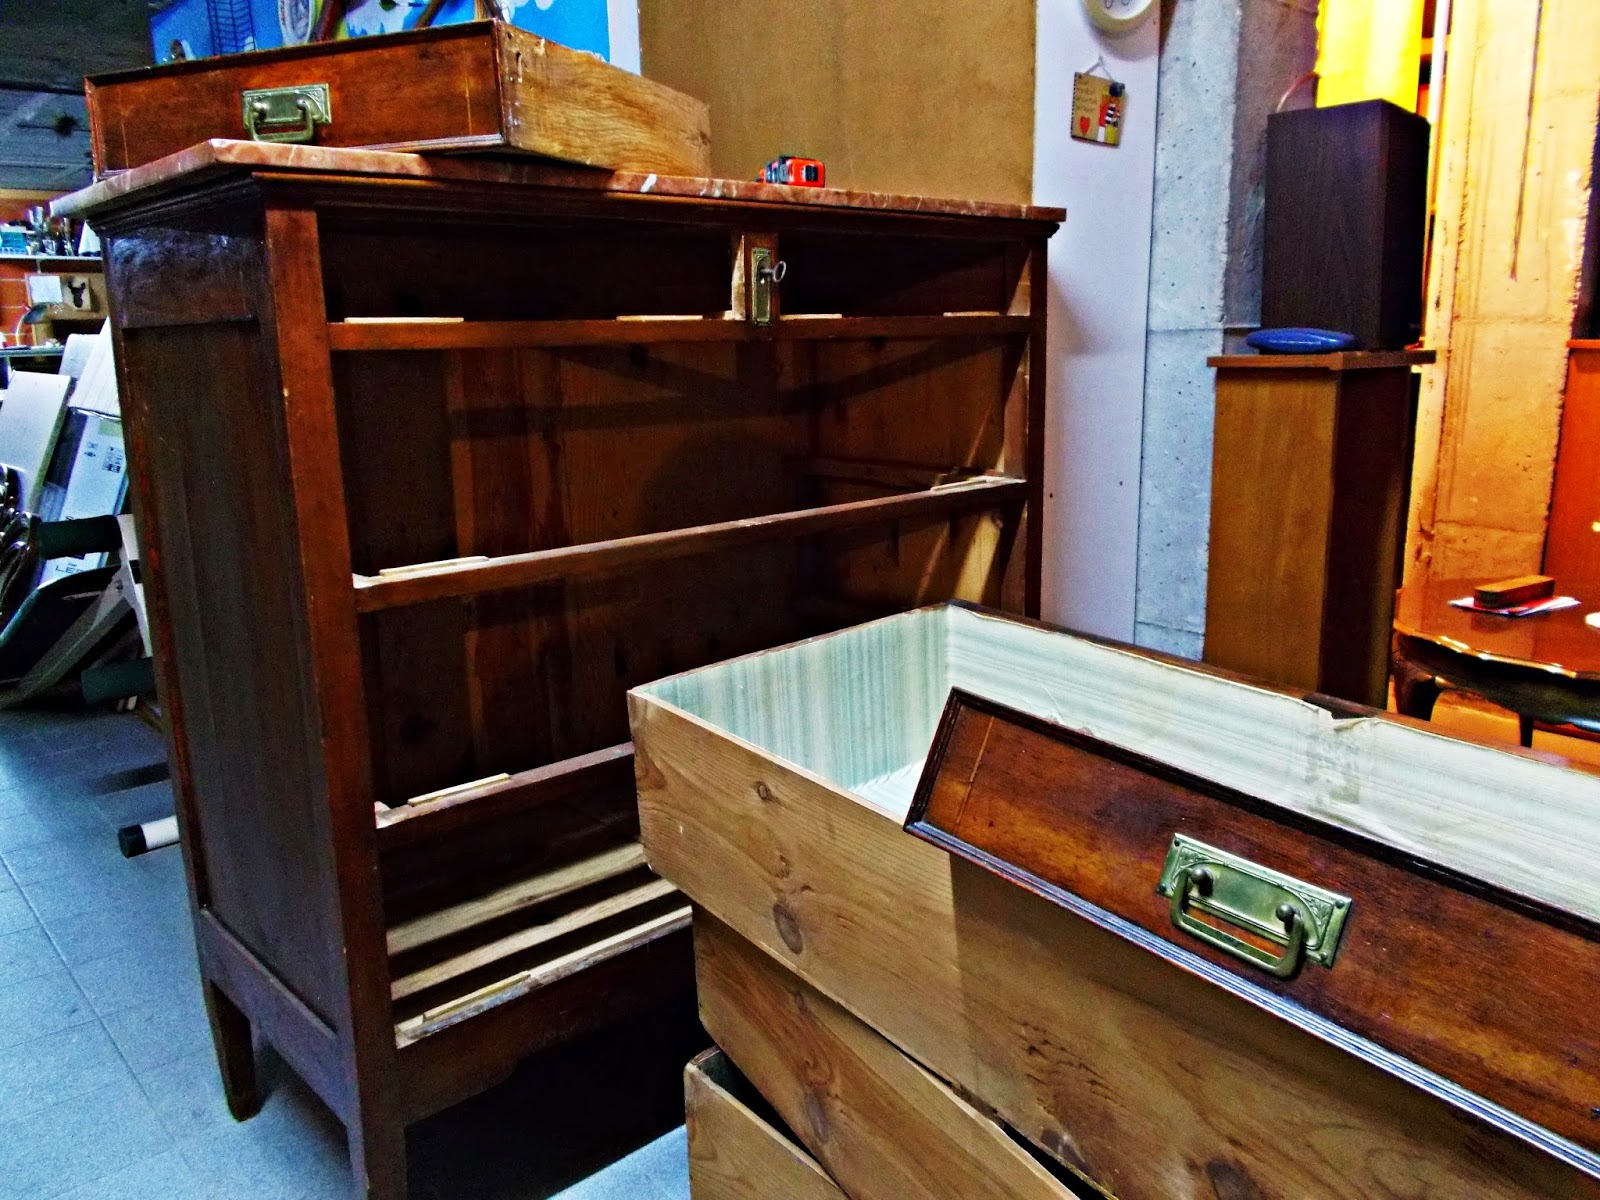 DIY-decoración-cómoda-mueble-restaurar-forrar-cajones-tela-leopardo-2